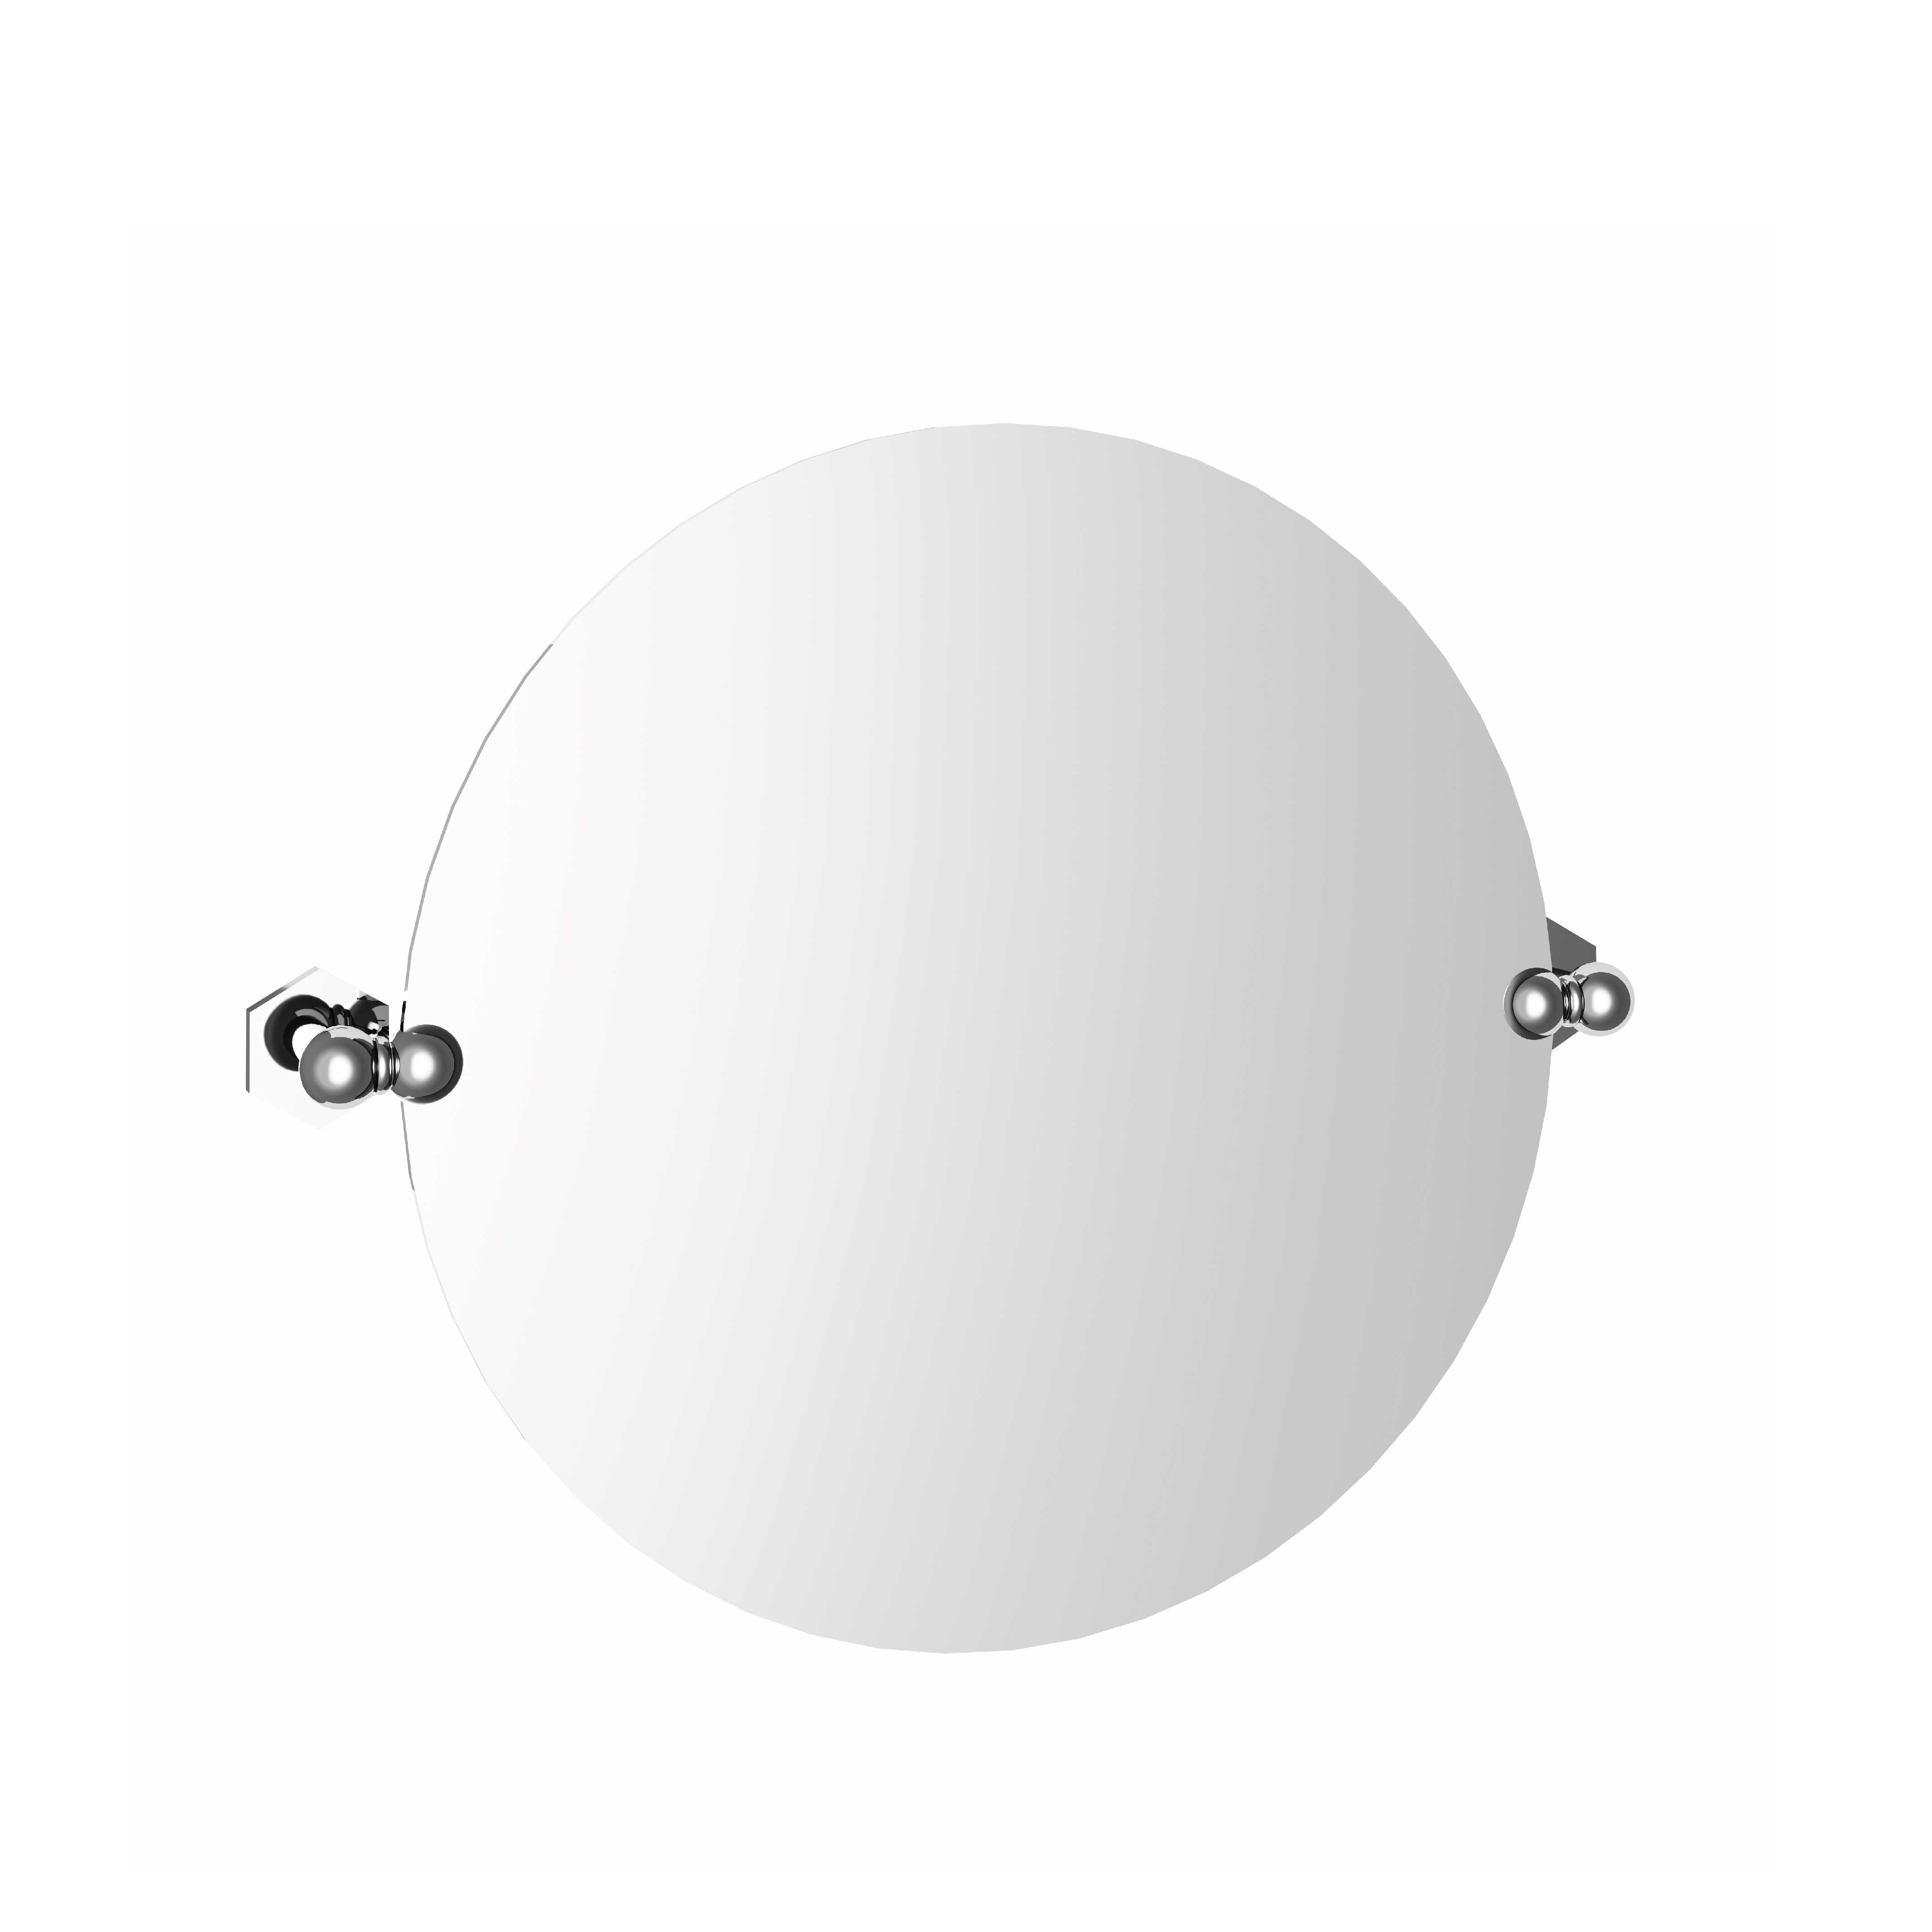 M38-536 Round mirror